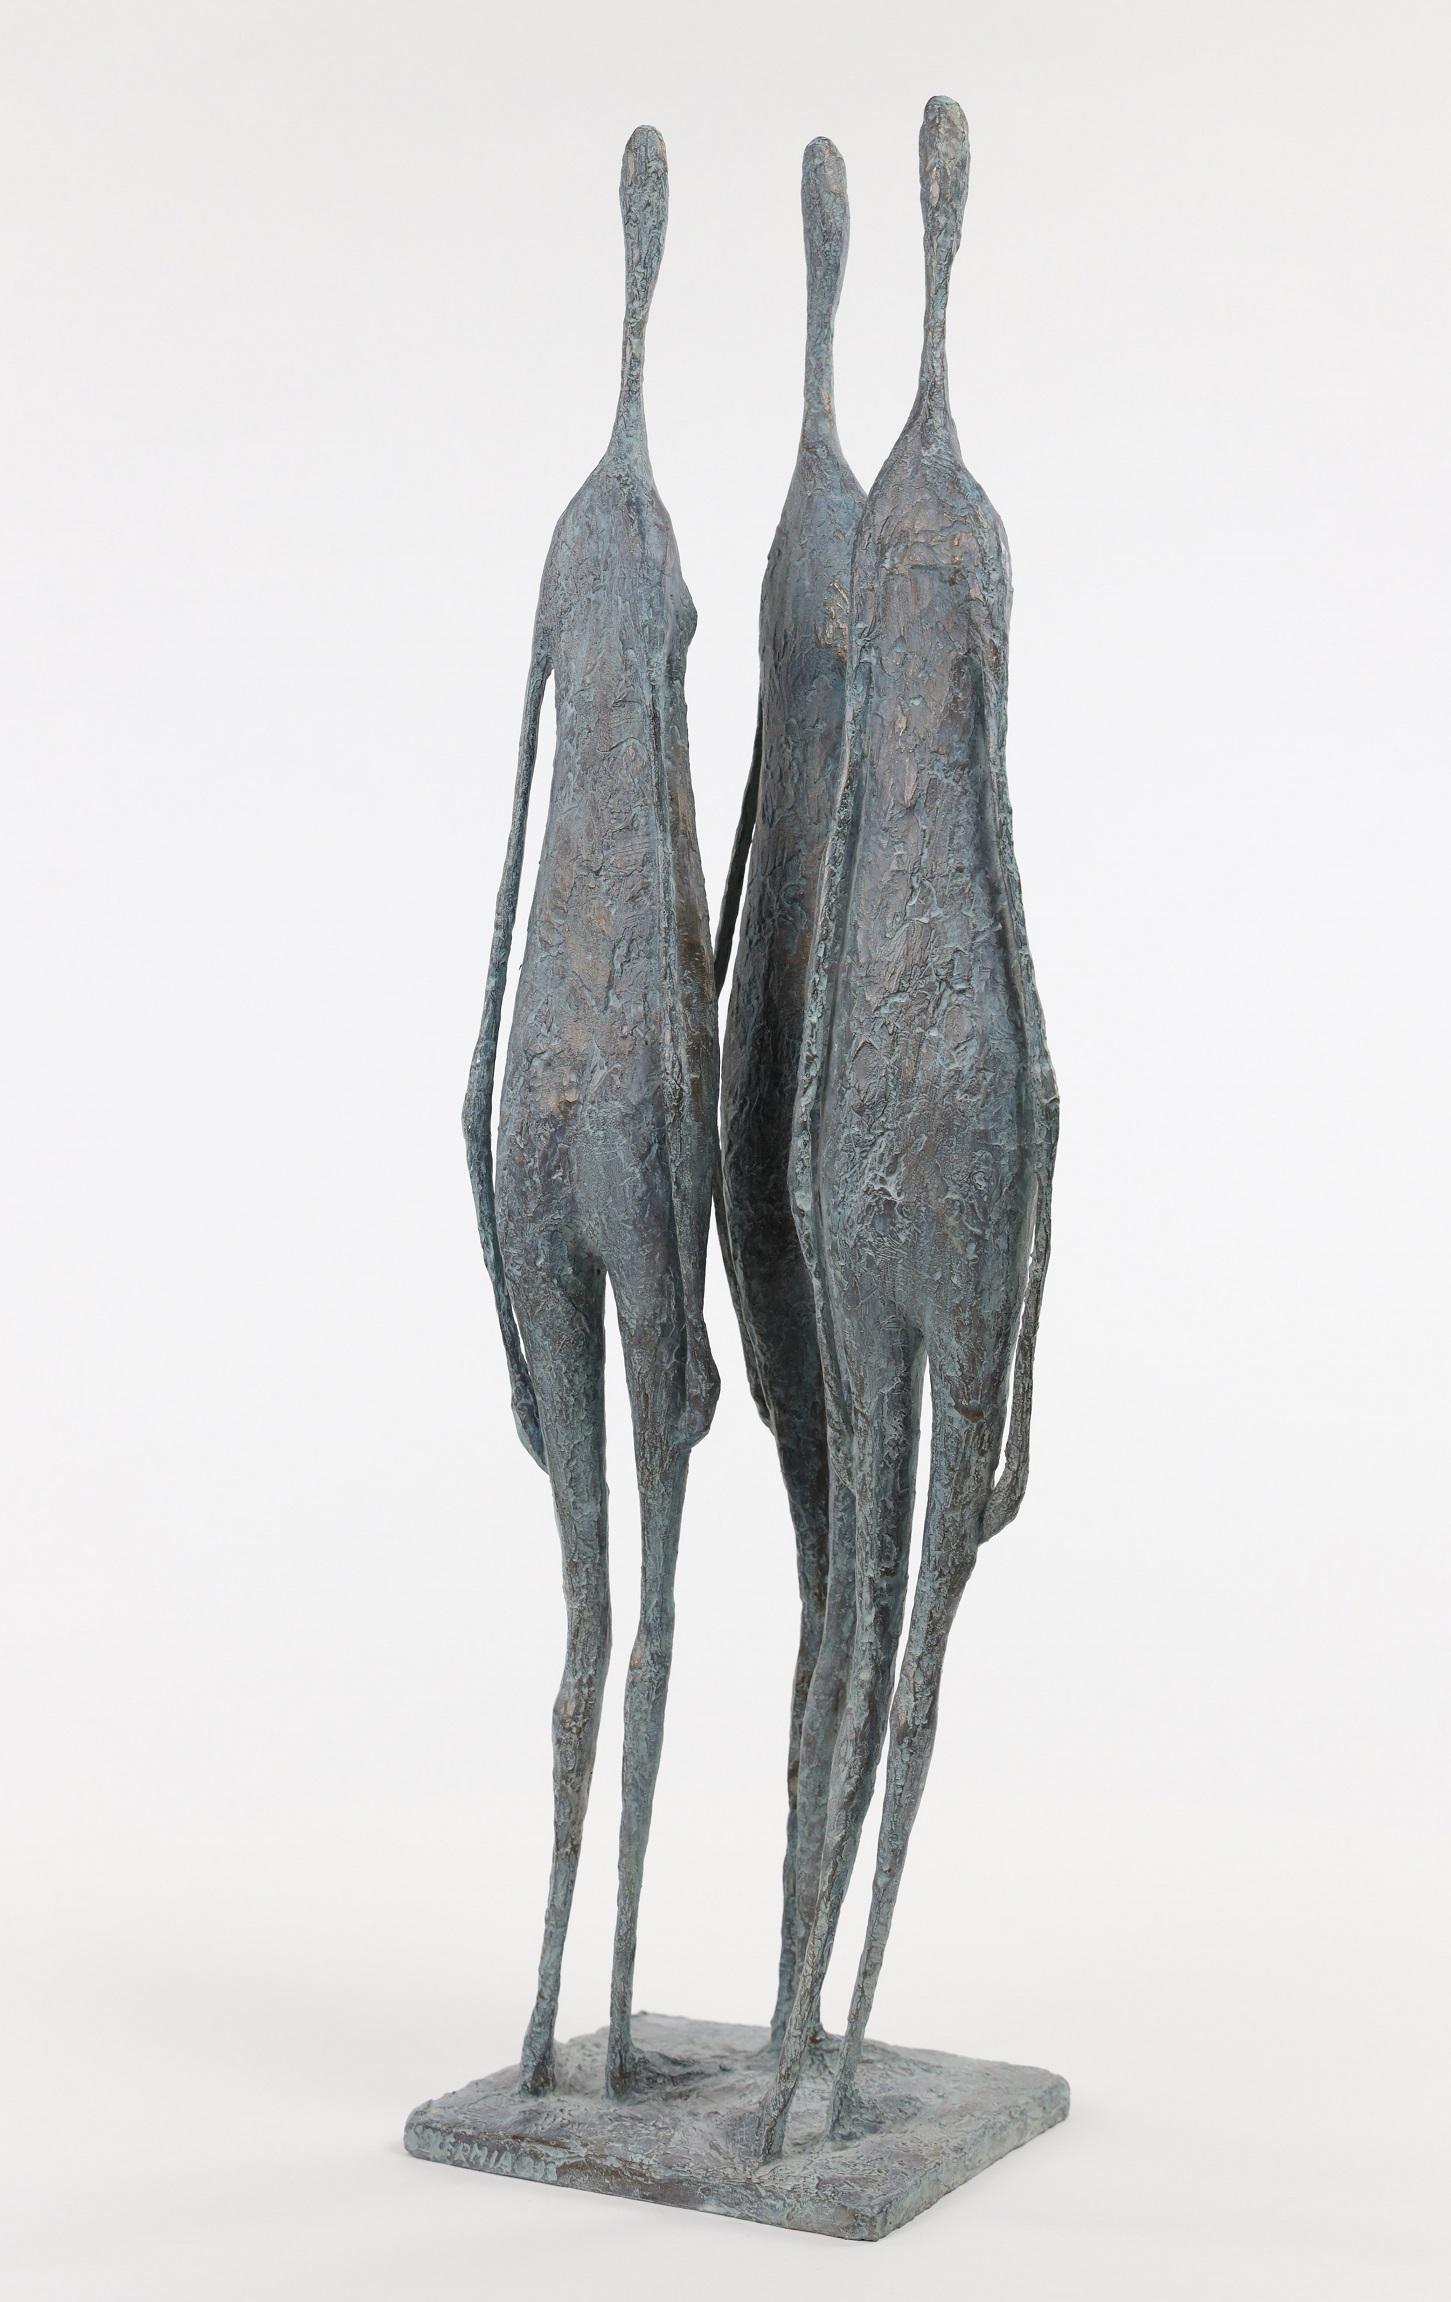 3 Stehende Figuren VI (3 Figures Debout VI) ist eine Bronzeskulptur des französischen Künstlers Pierre Yermia. 
Auflage von 8 Exemplaren und 4 Künstlerabzügen. Signiert und nummeriert
In diesem Werk geht der Bildhauer detailliert auf die Darstellung